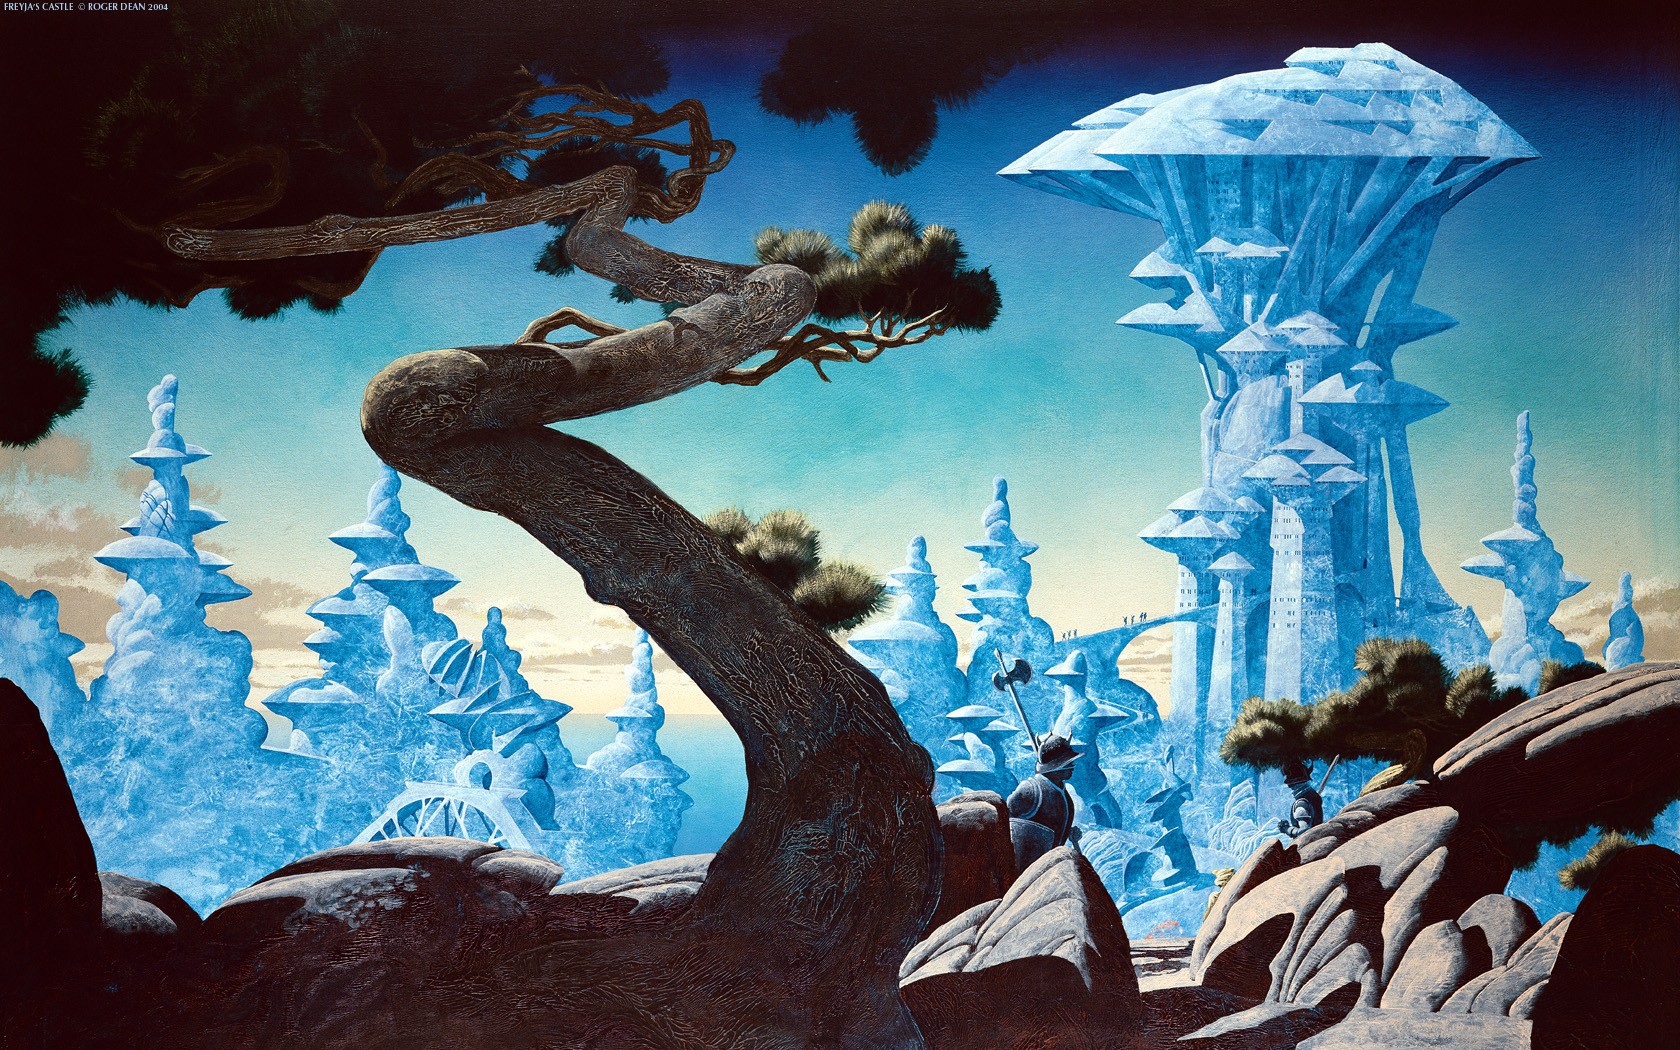 Digital Art Fantasy Art Roger Dean Nature Trees Branch Rock Castle Knight 1680x1050